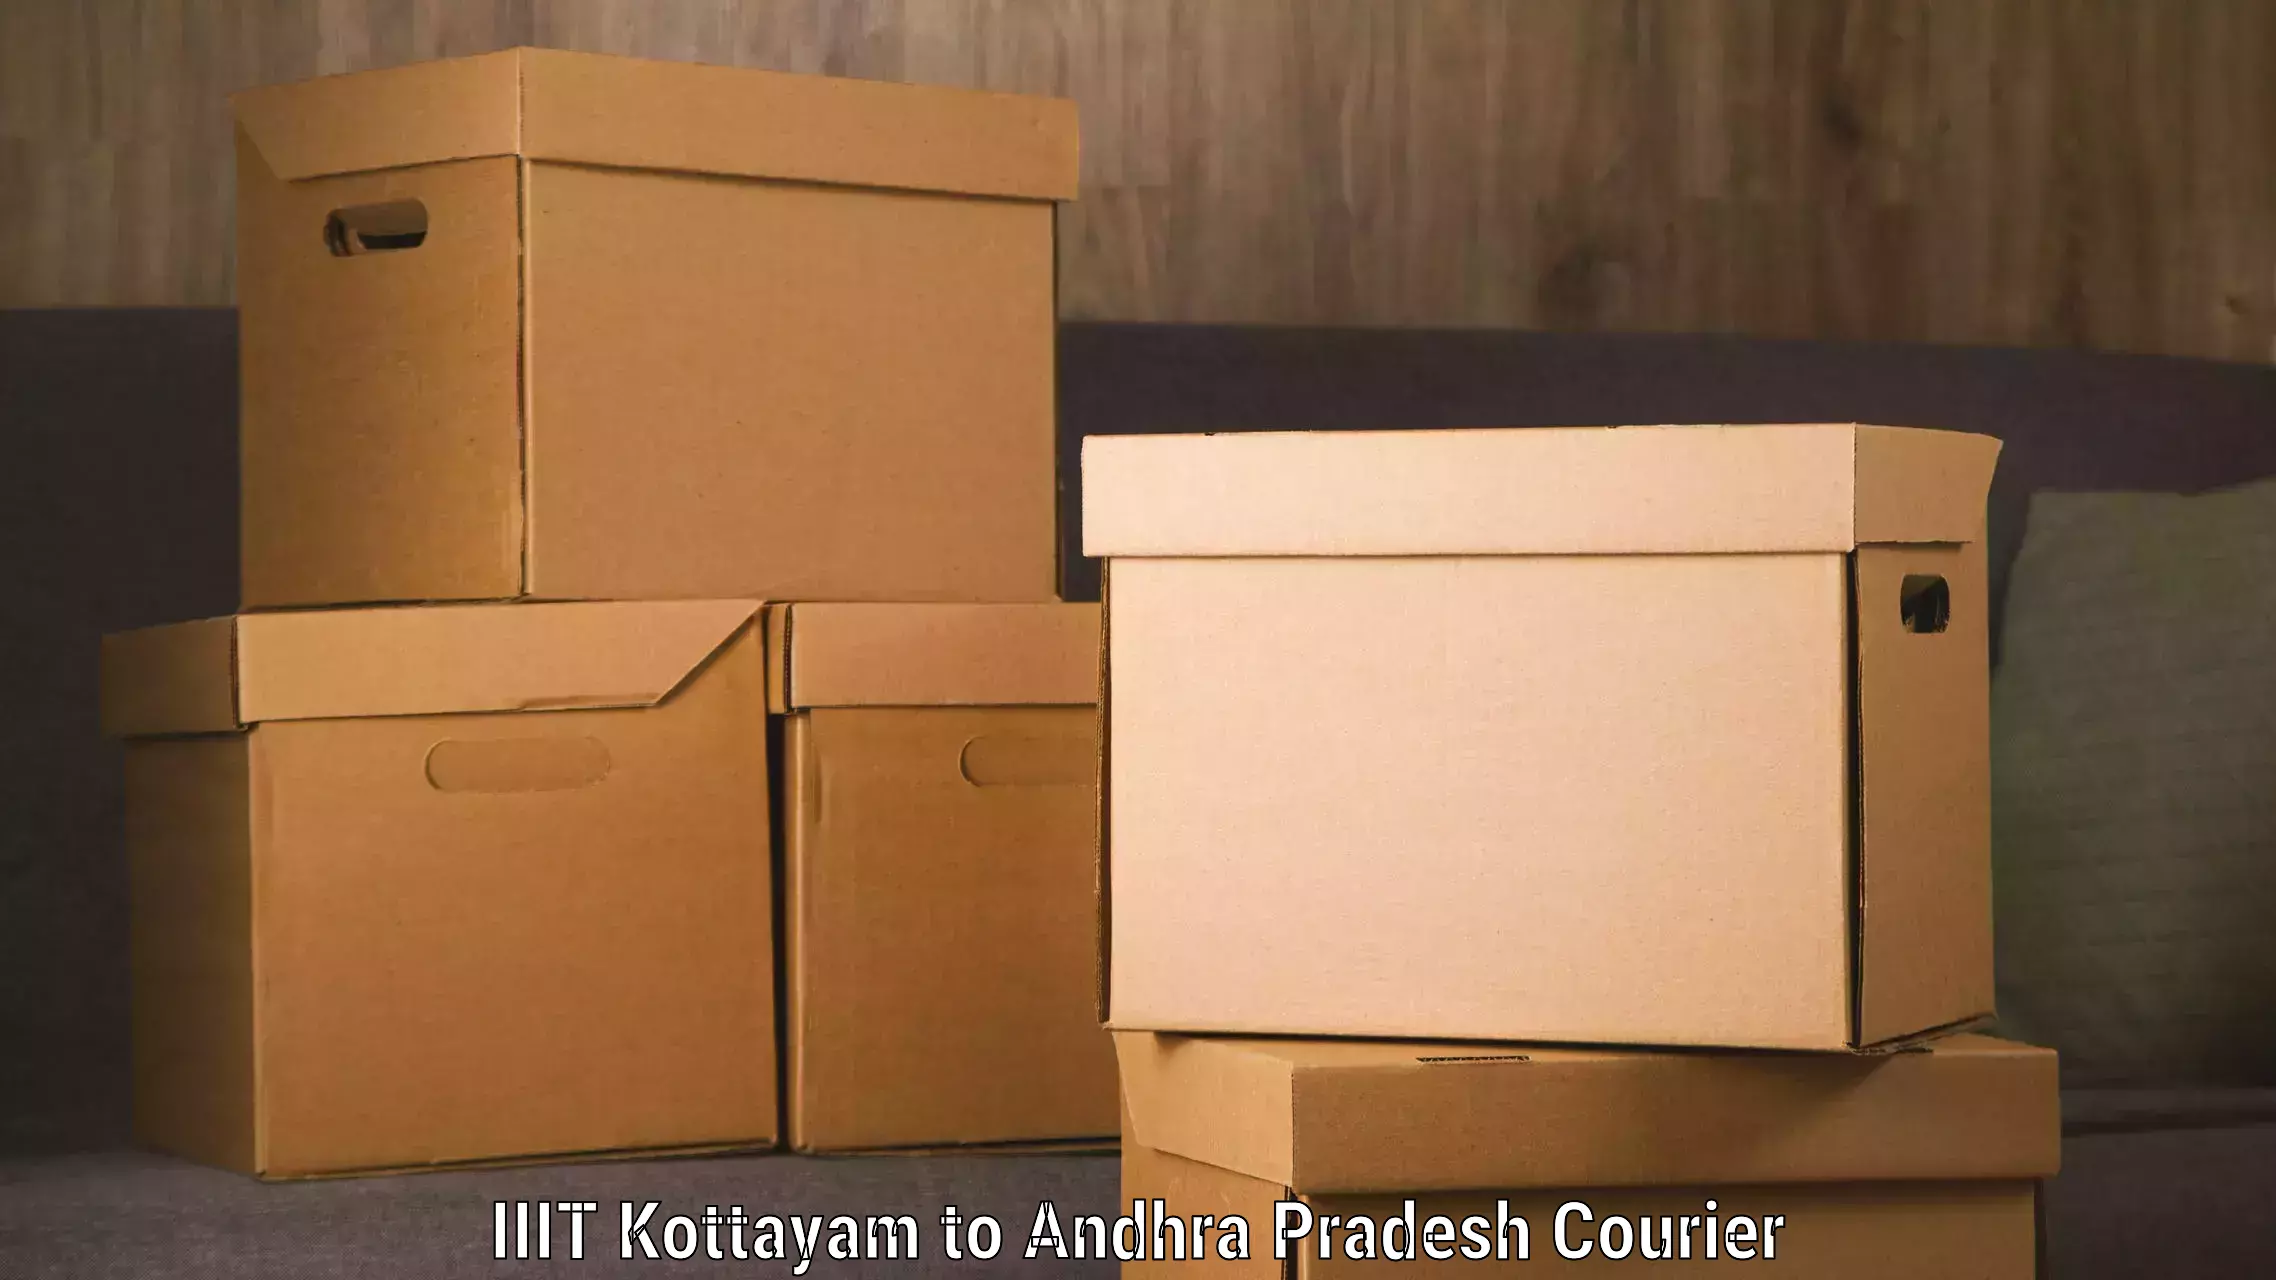 Regular parcel service IIIT Kottayam to Achampet Palnadu